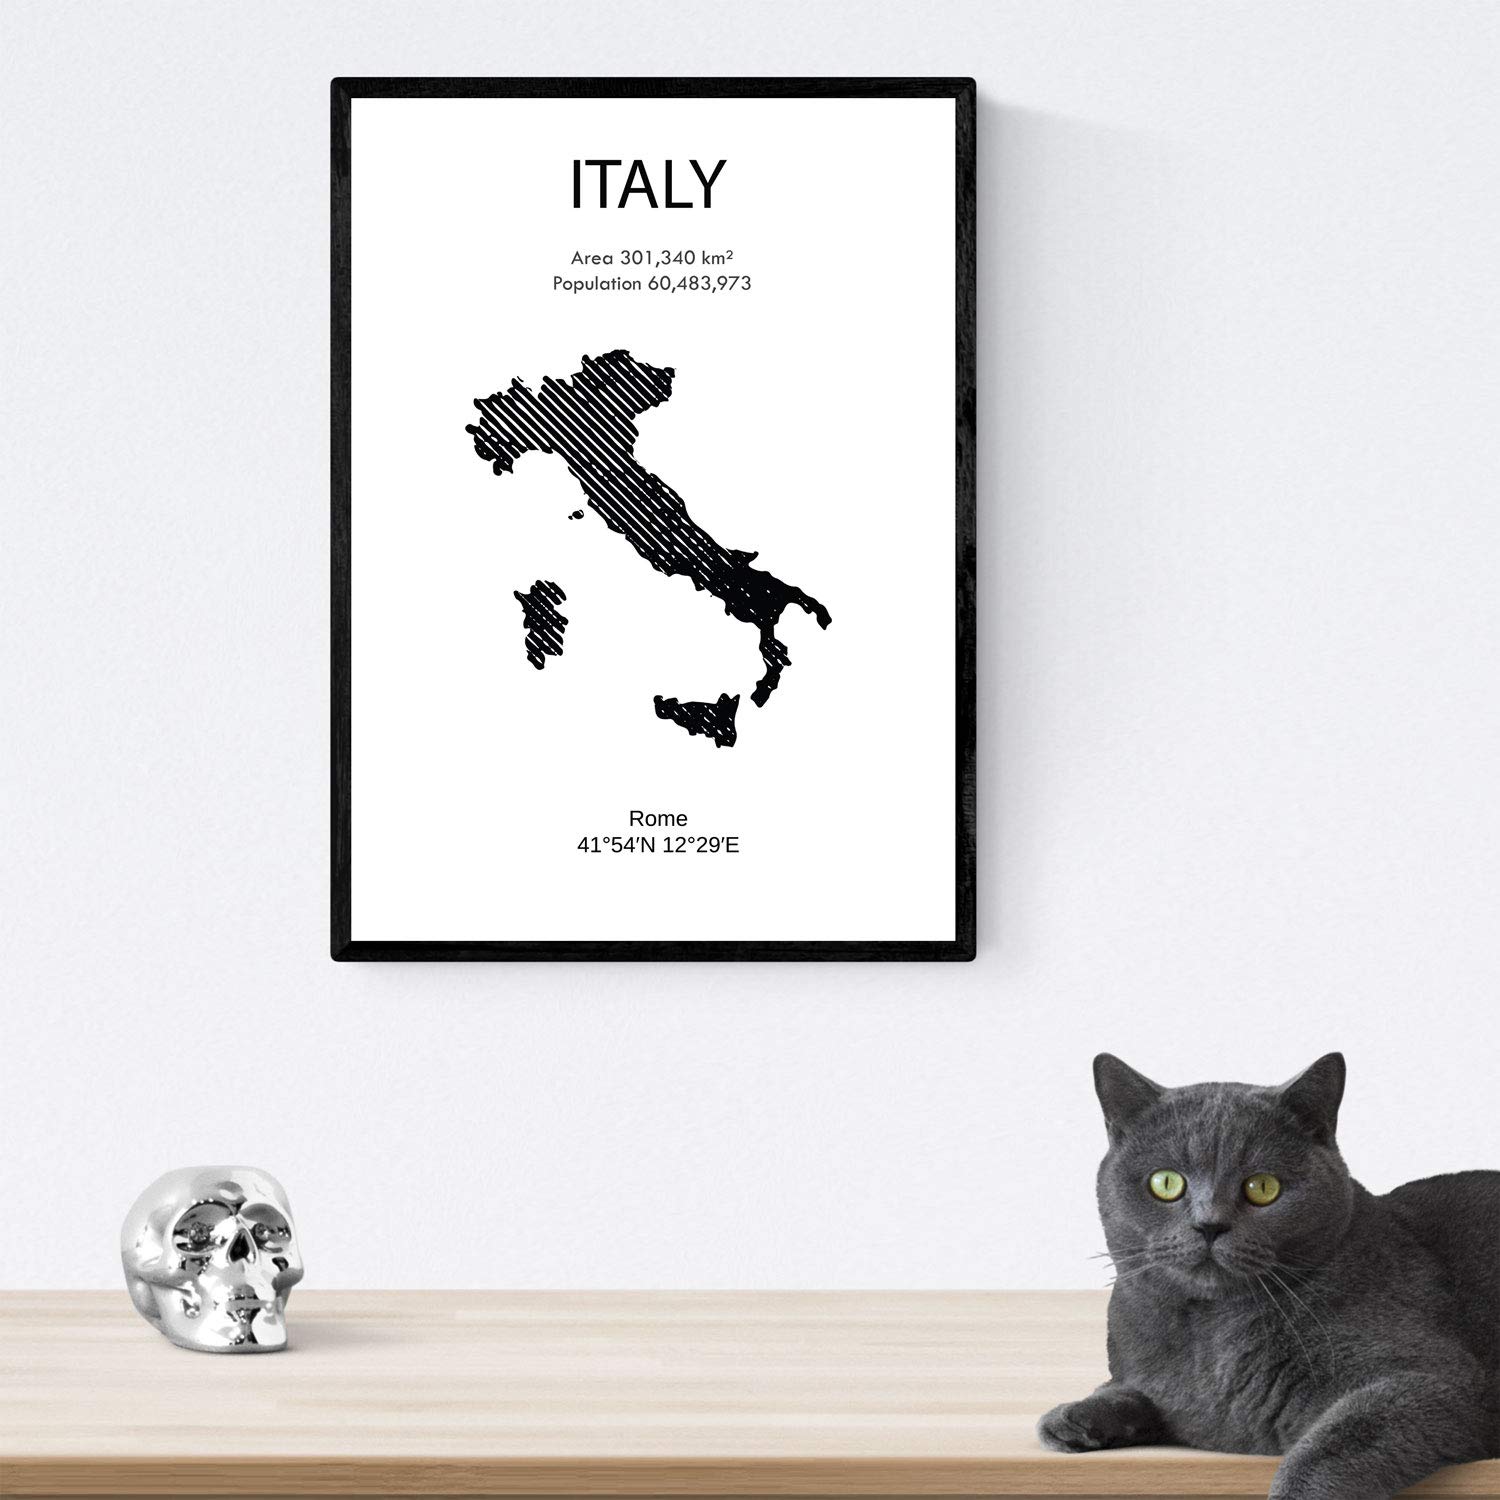 Pack de posters de paises y monumentos. Mapa ciudad de Roma, monumento Coliseo y mapa Italia.-Artwork-Nacnic-Nacnic Estudio SL